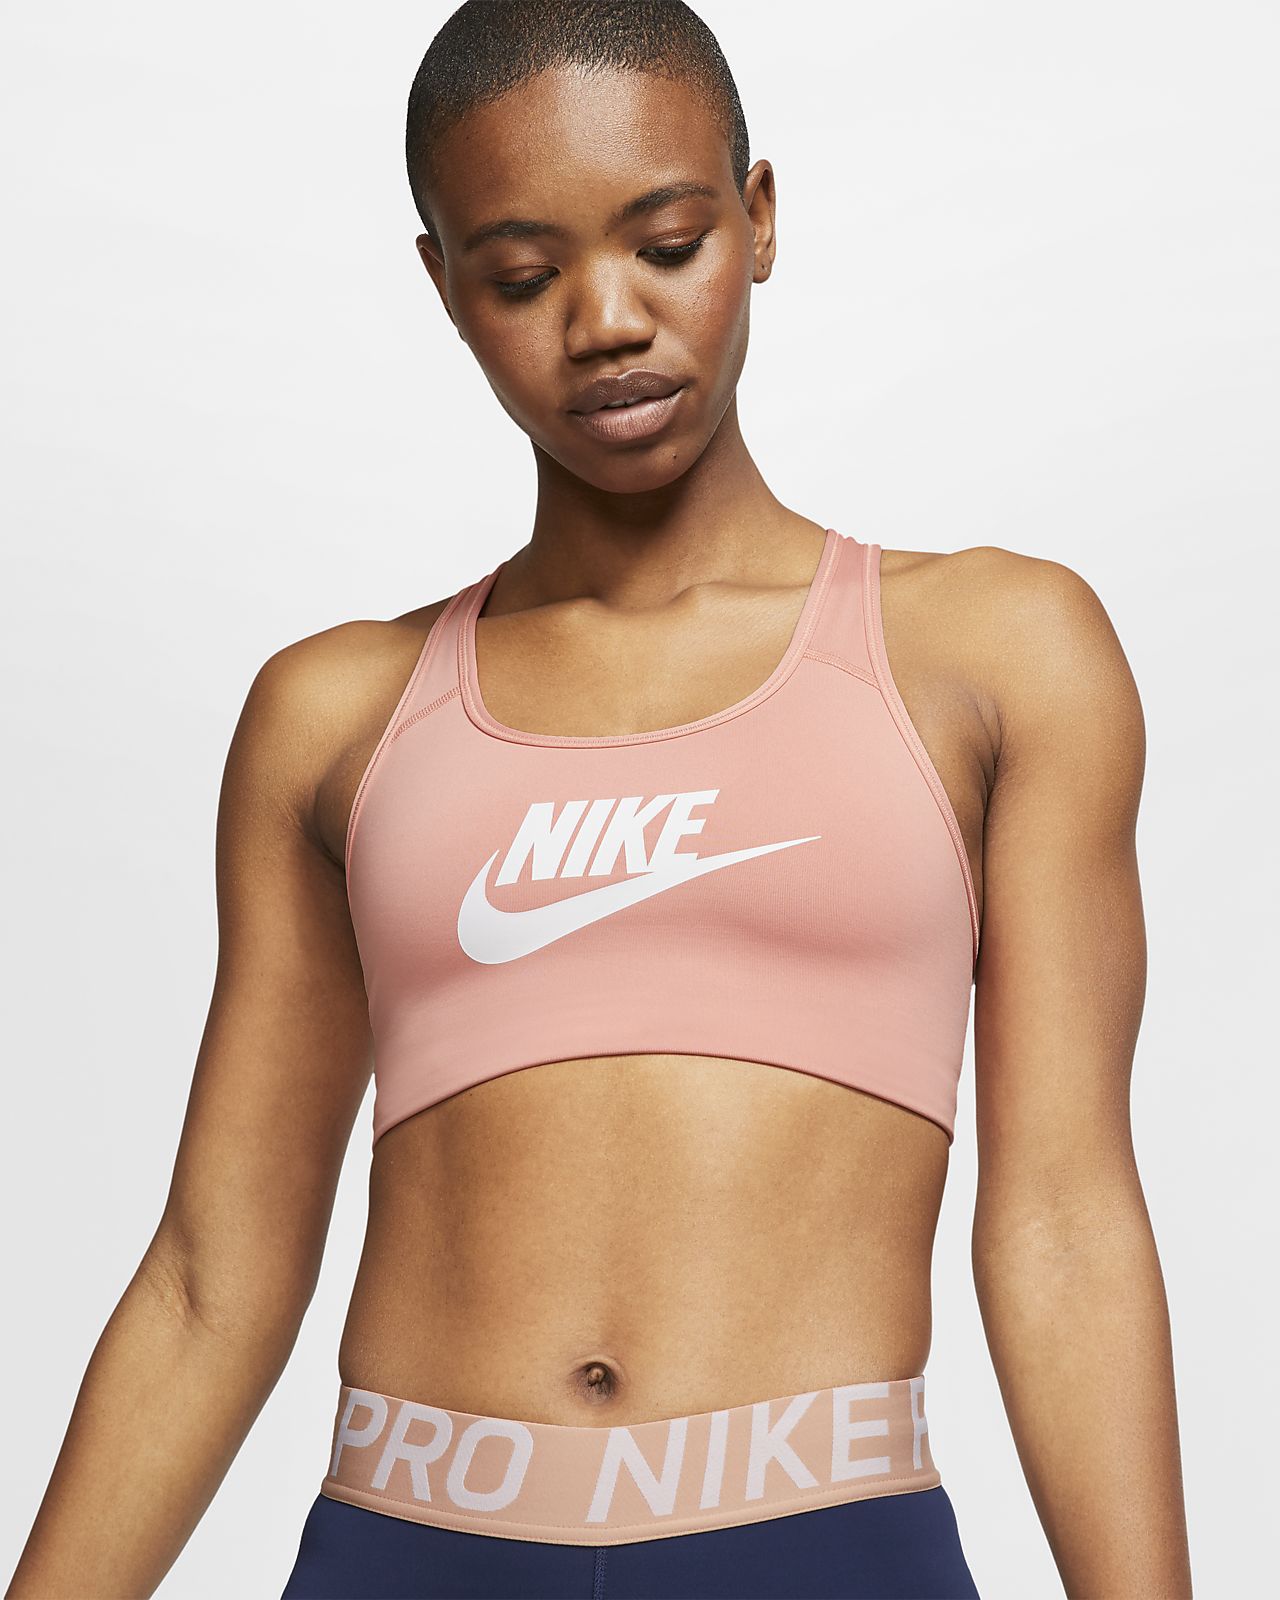 Nike Logo Futura Sale, 54% OFF | empow-her.com